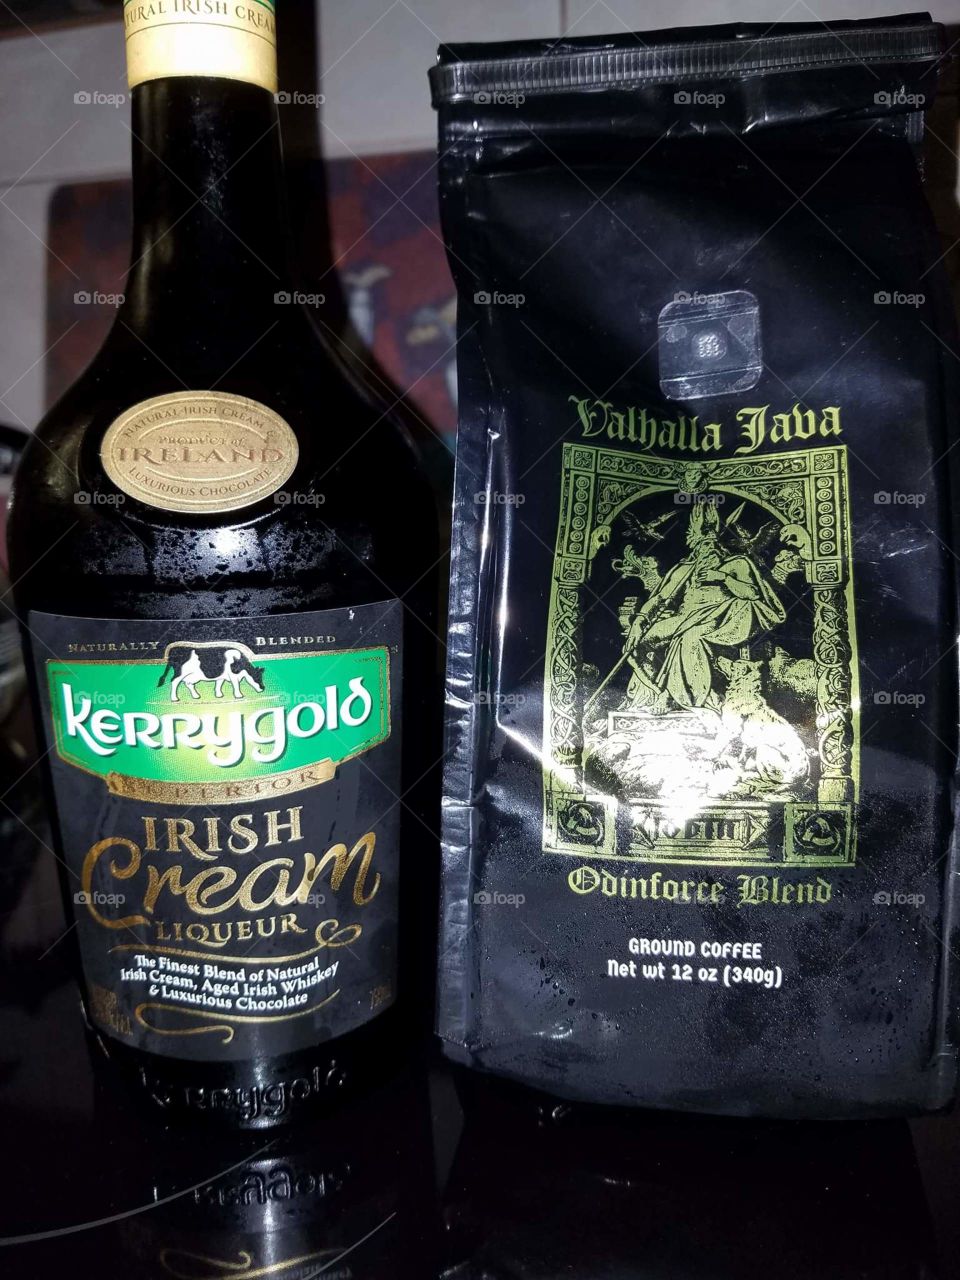 Irish cream and coffee